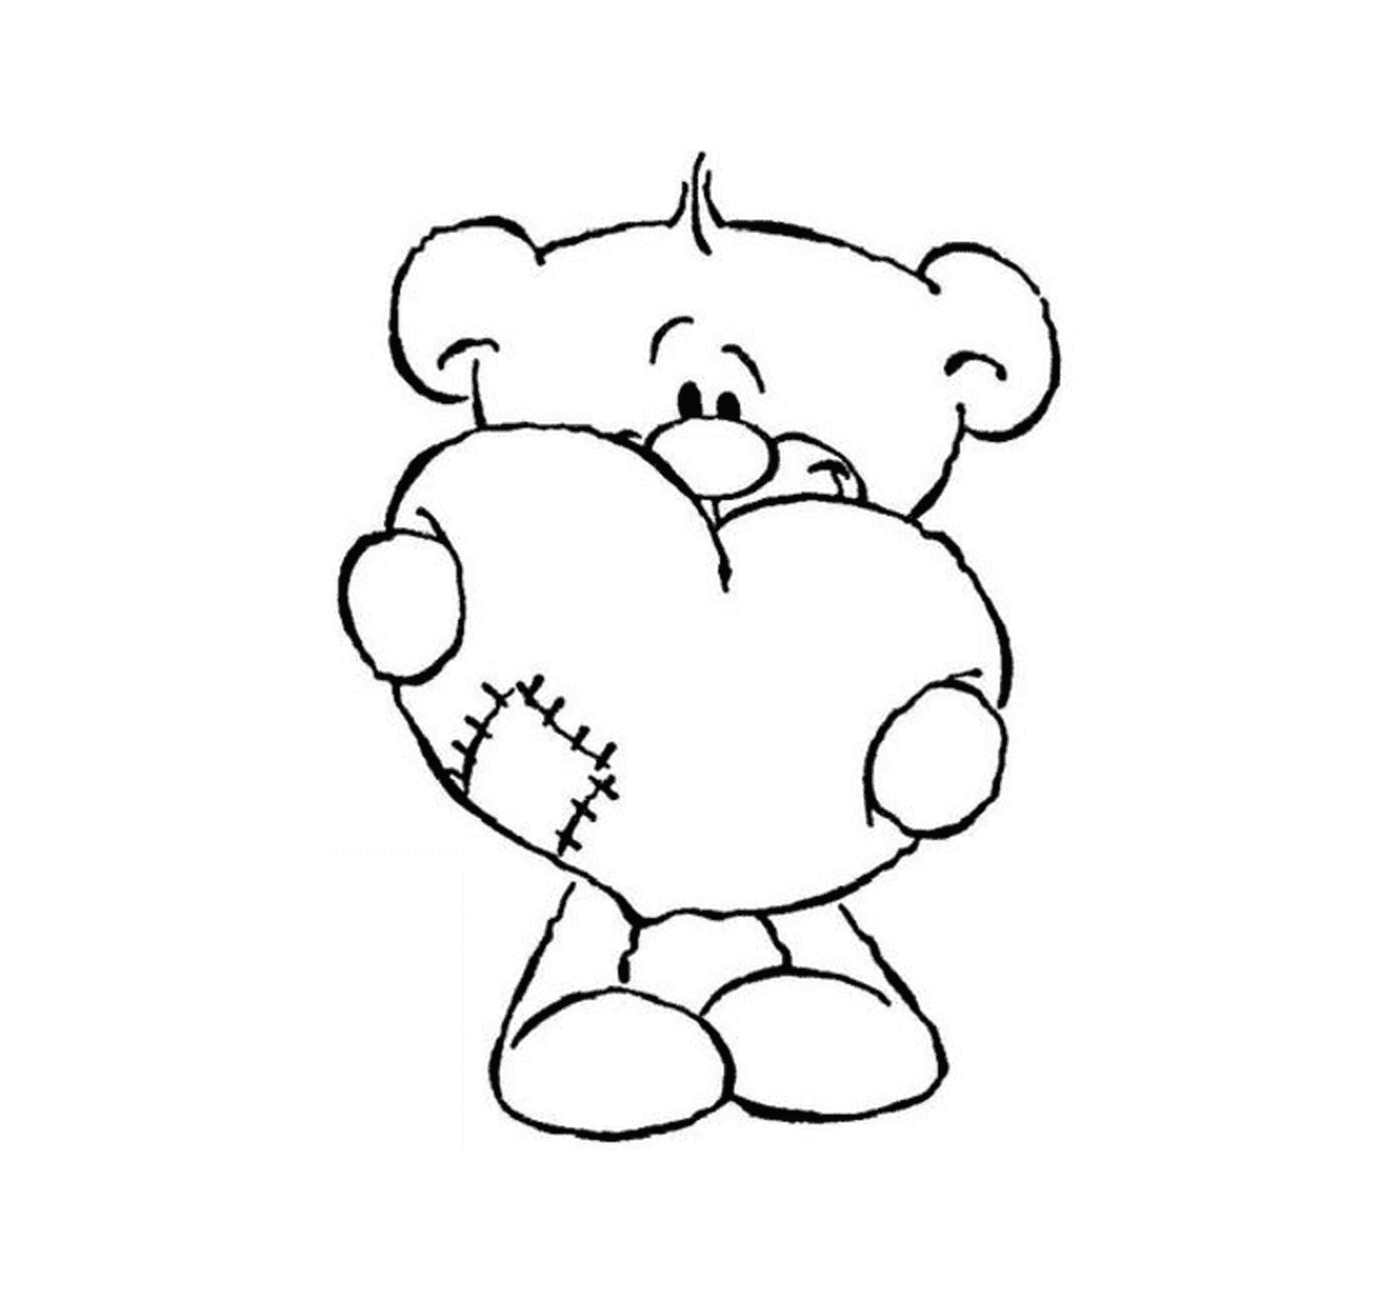  一只泰迪熊手里握着一颗心 